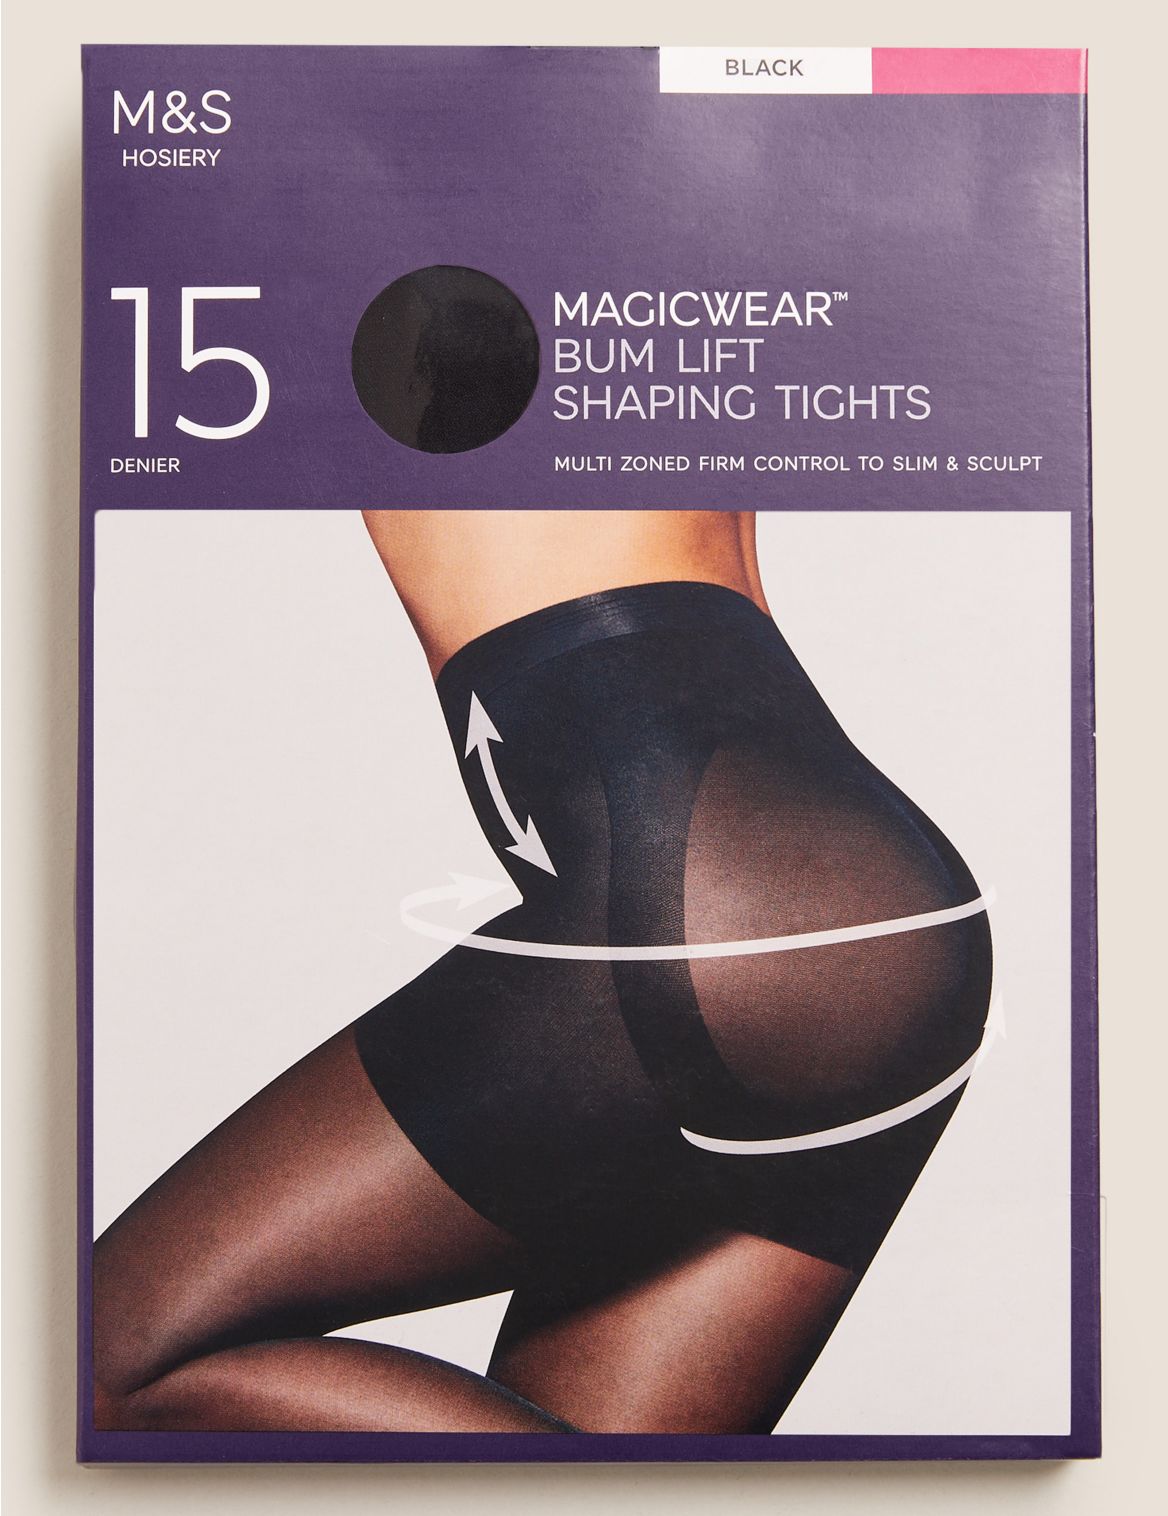 15 Denier Magicwear&trade; Matt Body Shaper Tights black